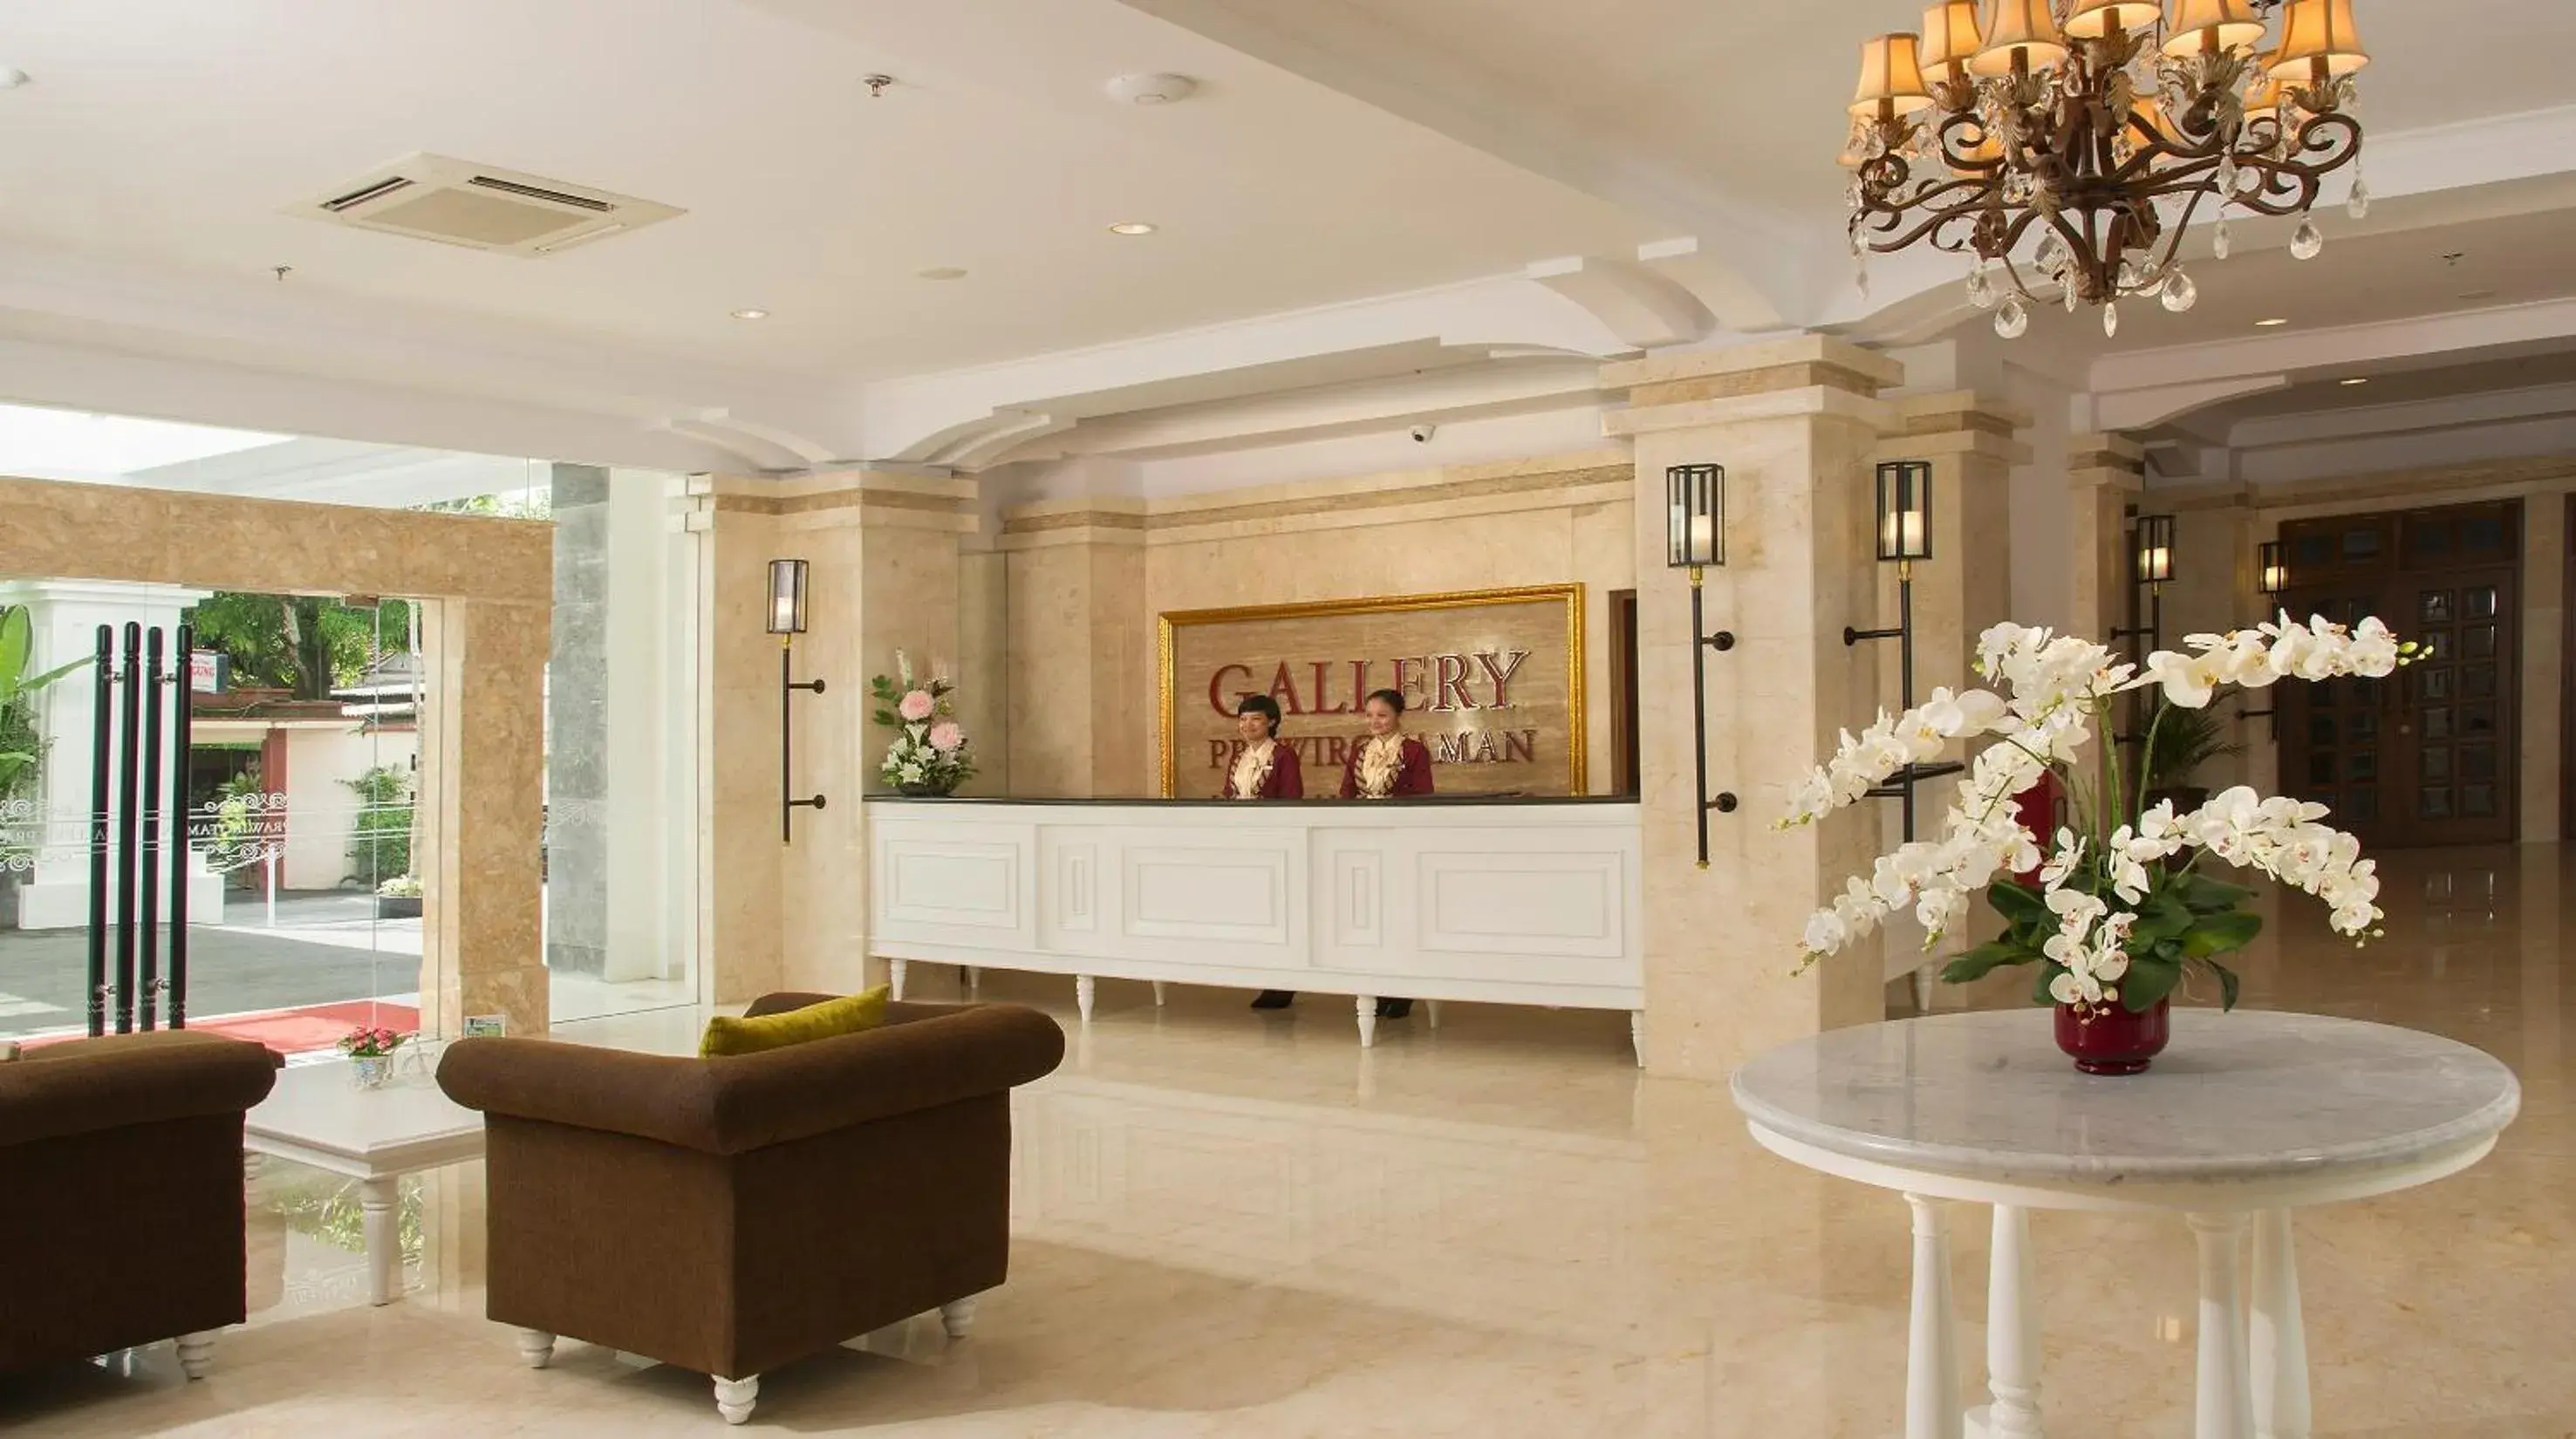 Lobby or reception, Lobby/Reception in Gallery Prawirotaman Hotel